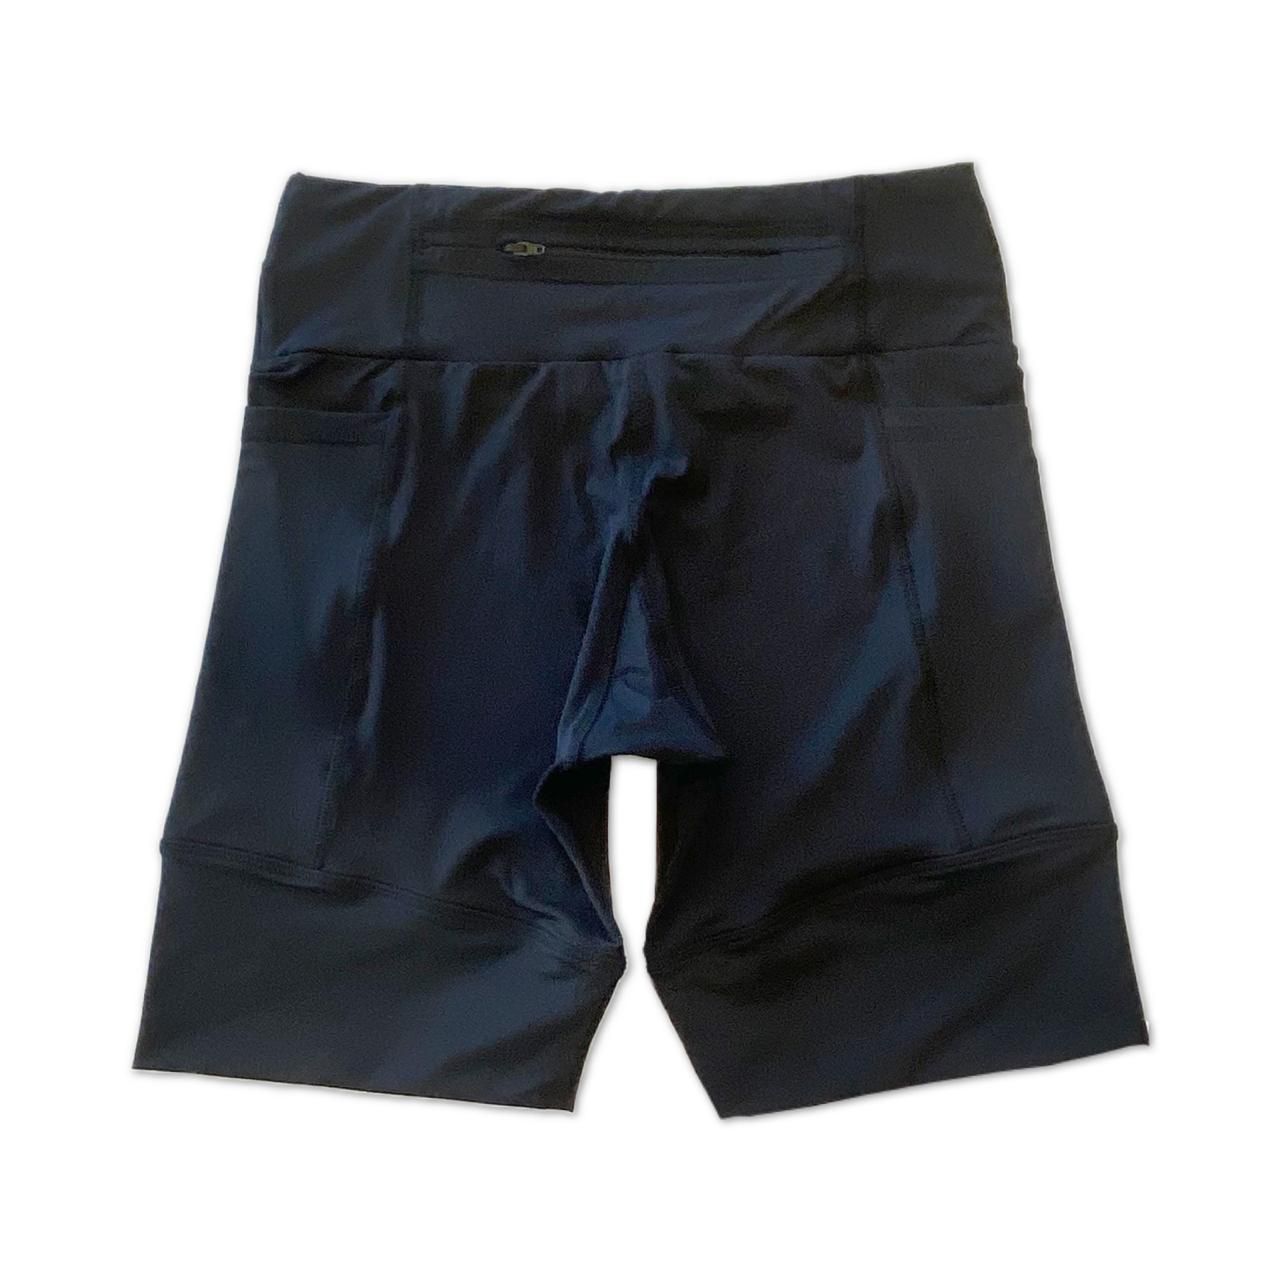 Bermuda de compressão masculina - unissex 1500 bolsos quadrados em bodytex preto